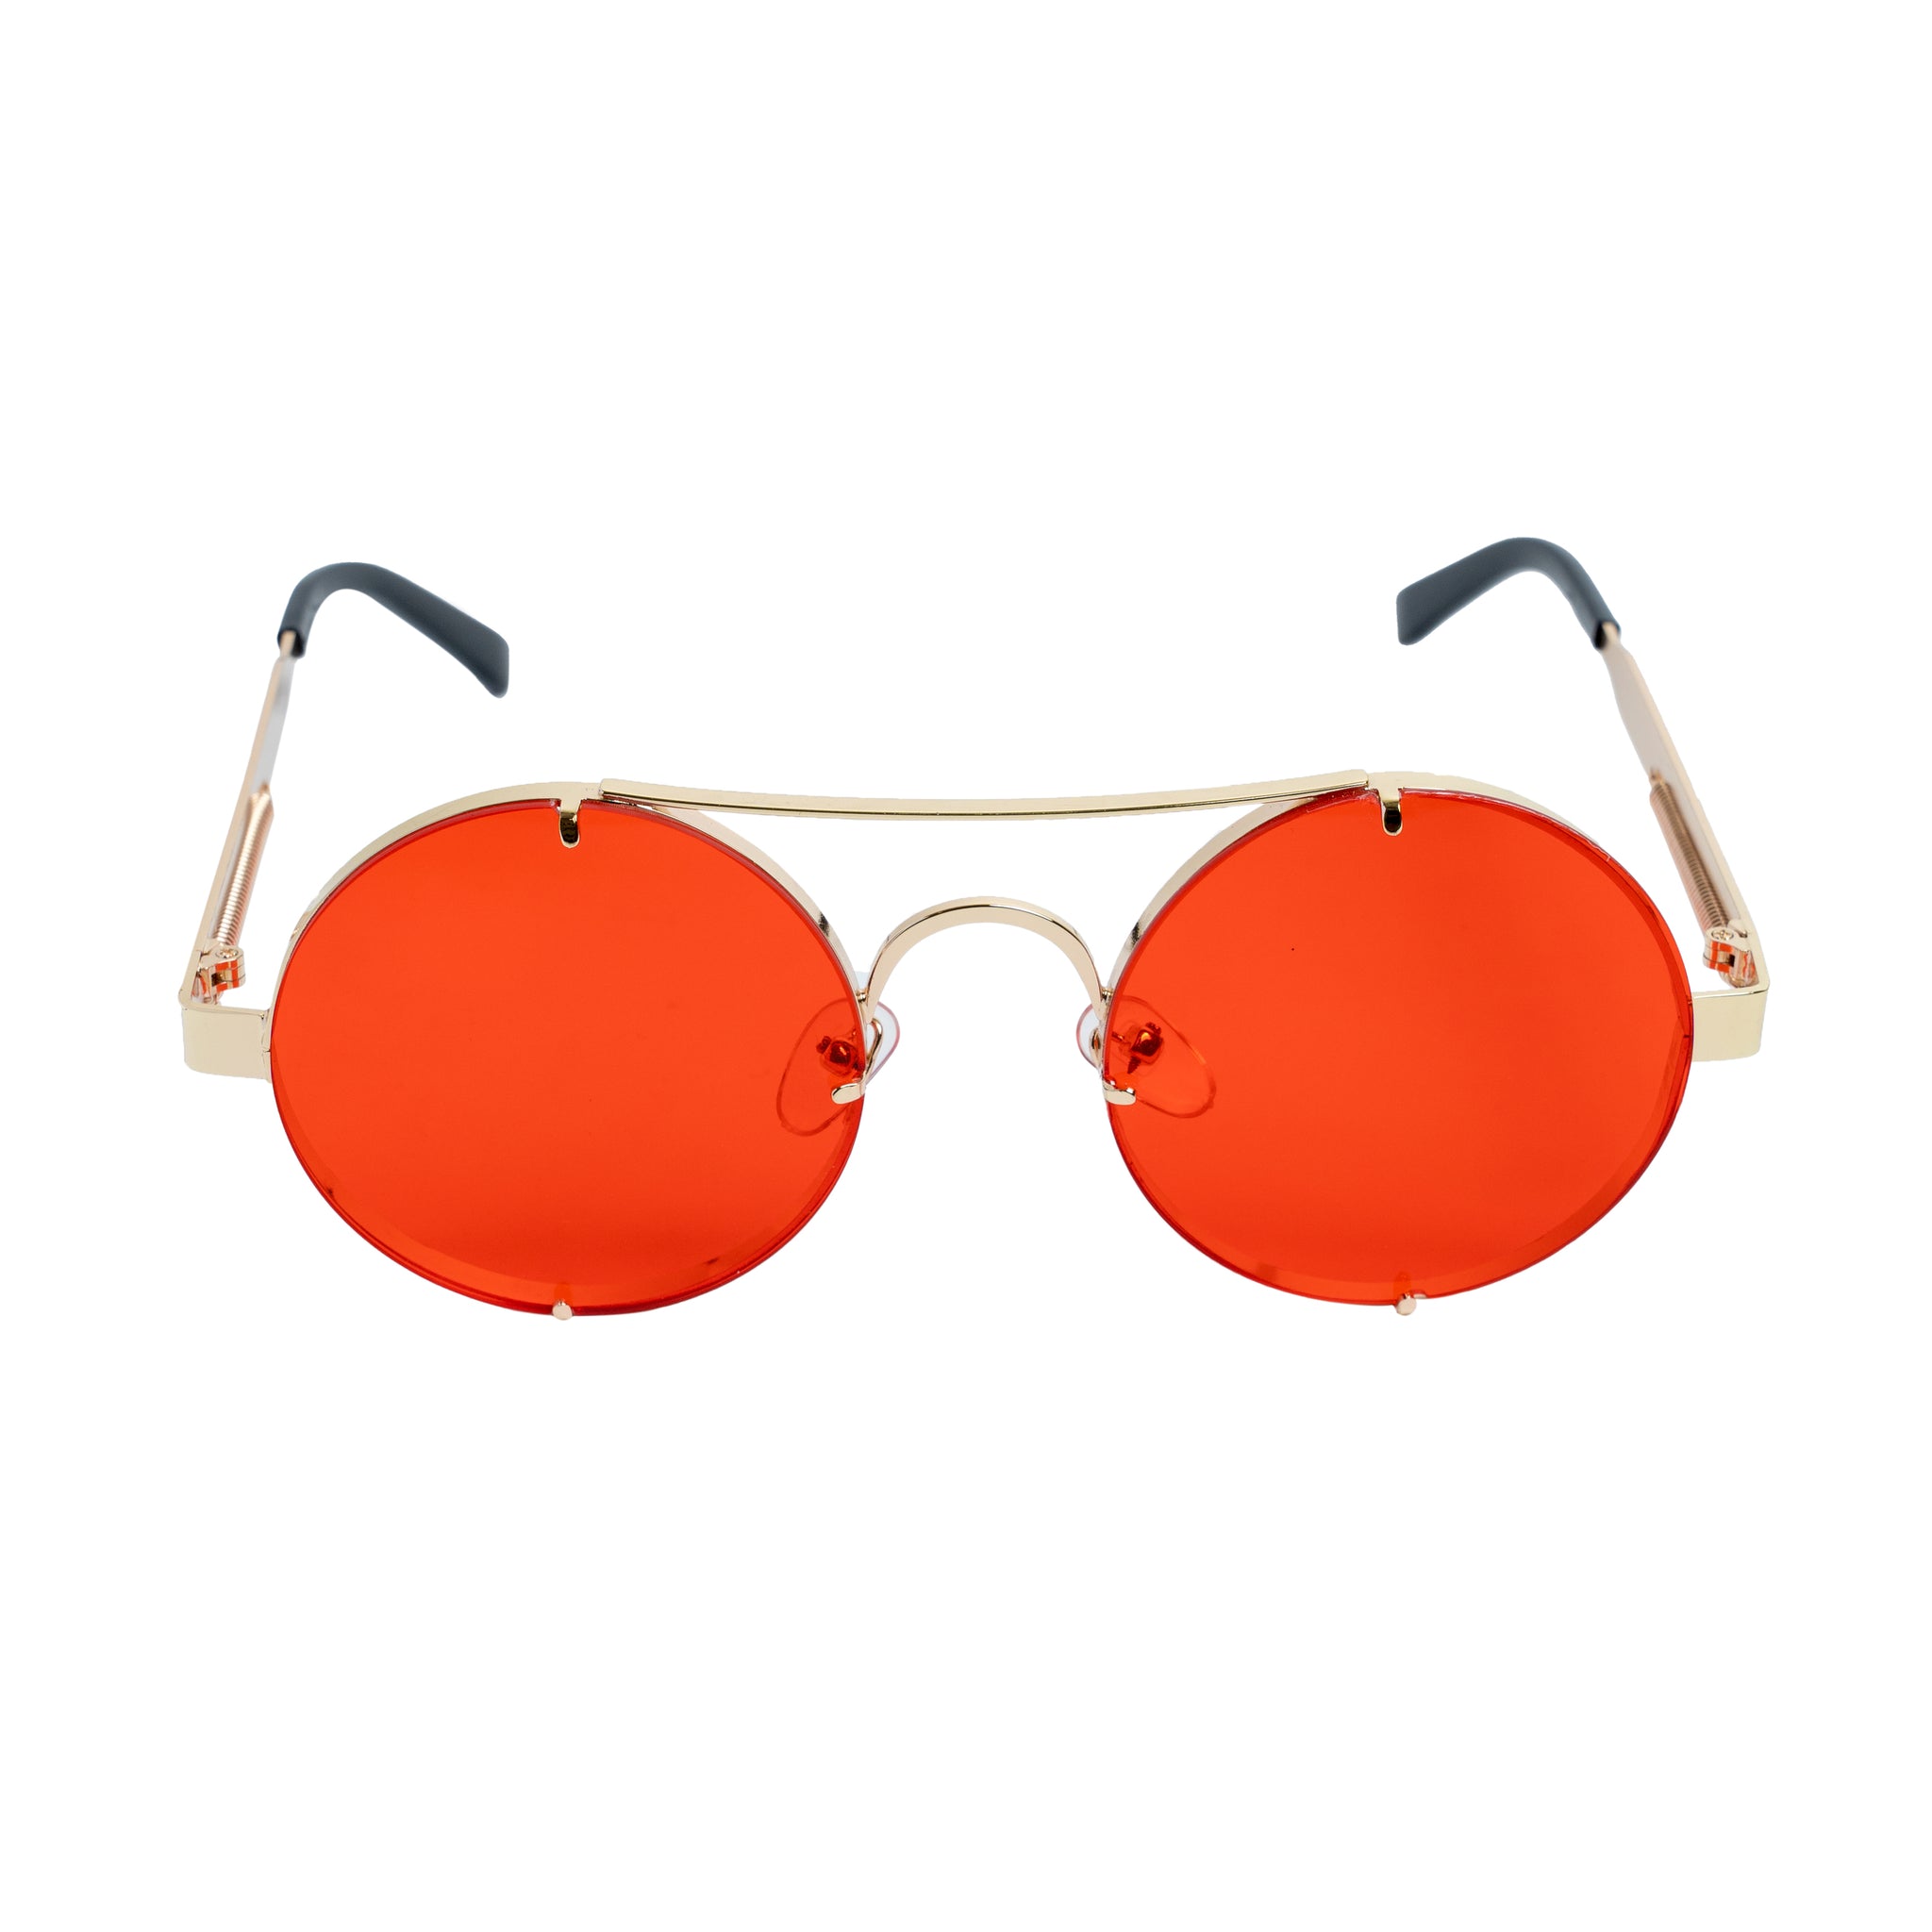 Chokore Retro Polarized Sunglasses (Red & Golden)